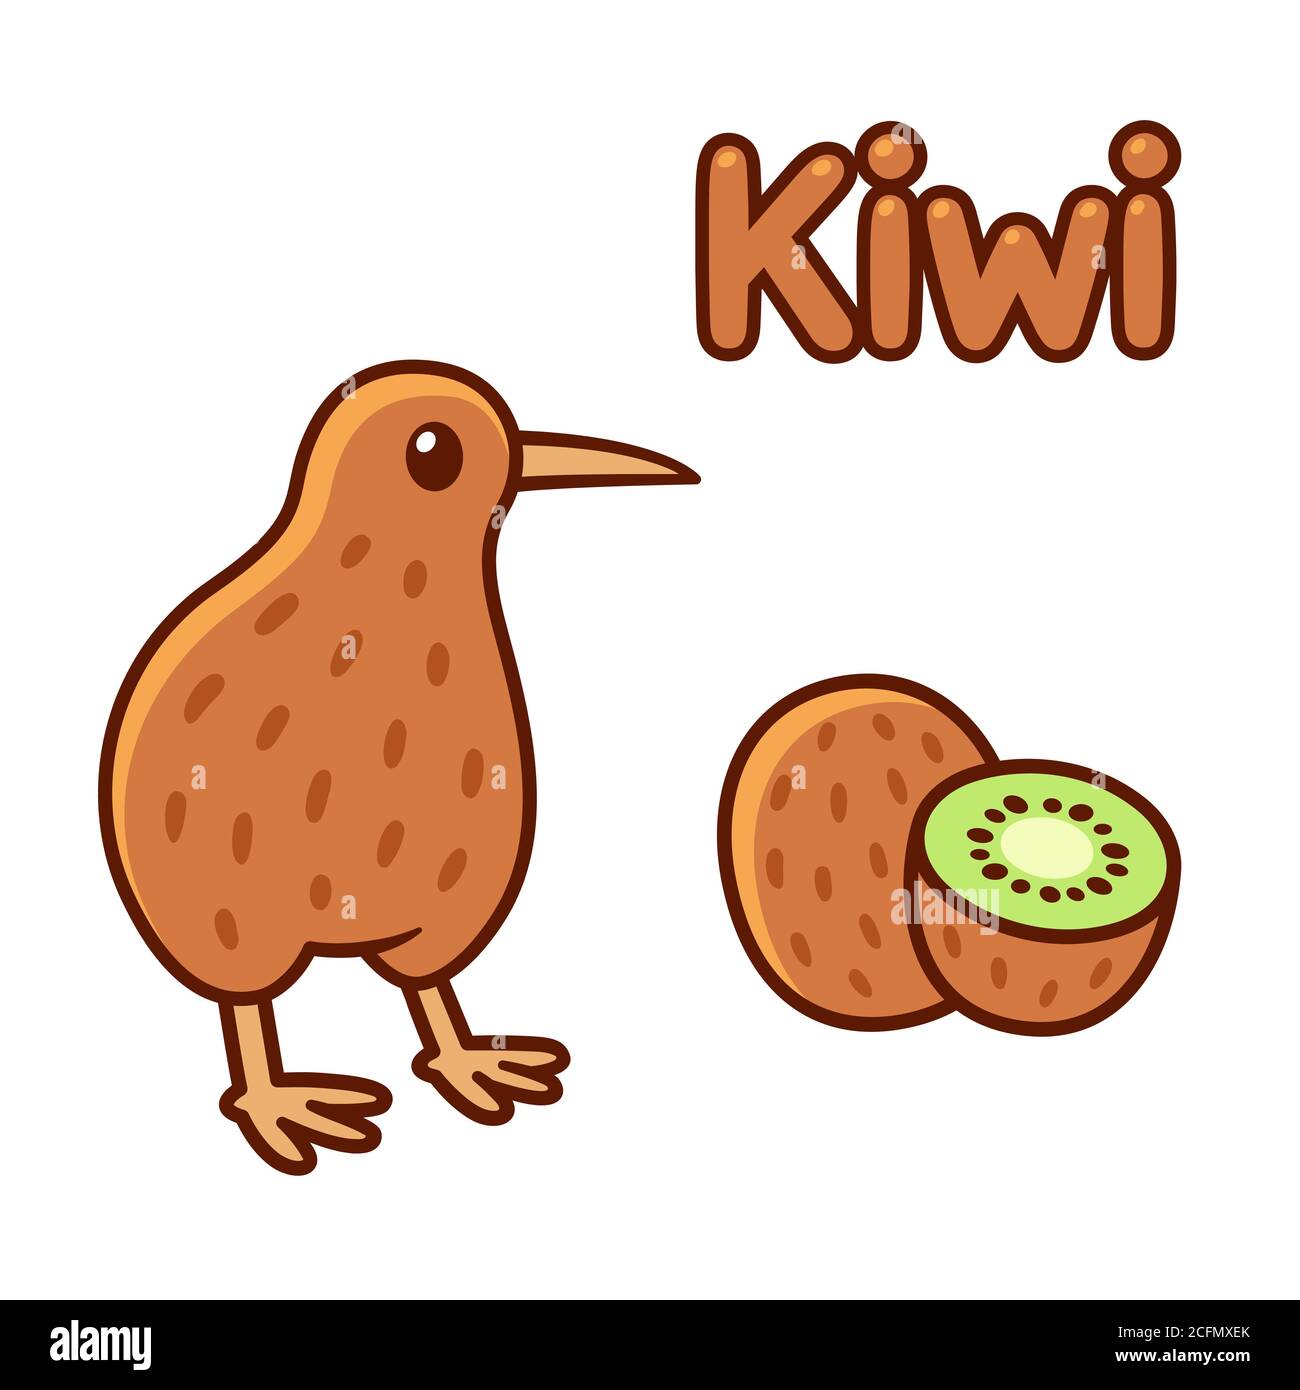 Carino cartone animato kiwi uccello e frutta disegno. Illustrazione della clip art vettoriale isolata. Illustrazione Vettoriale